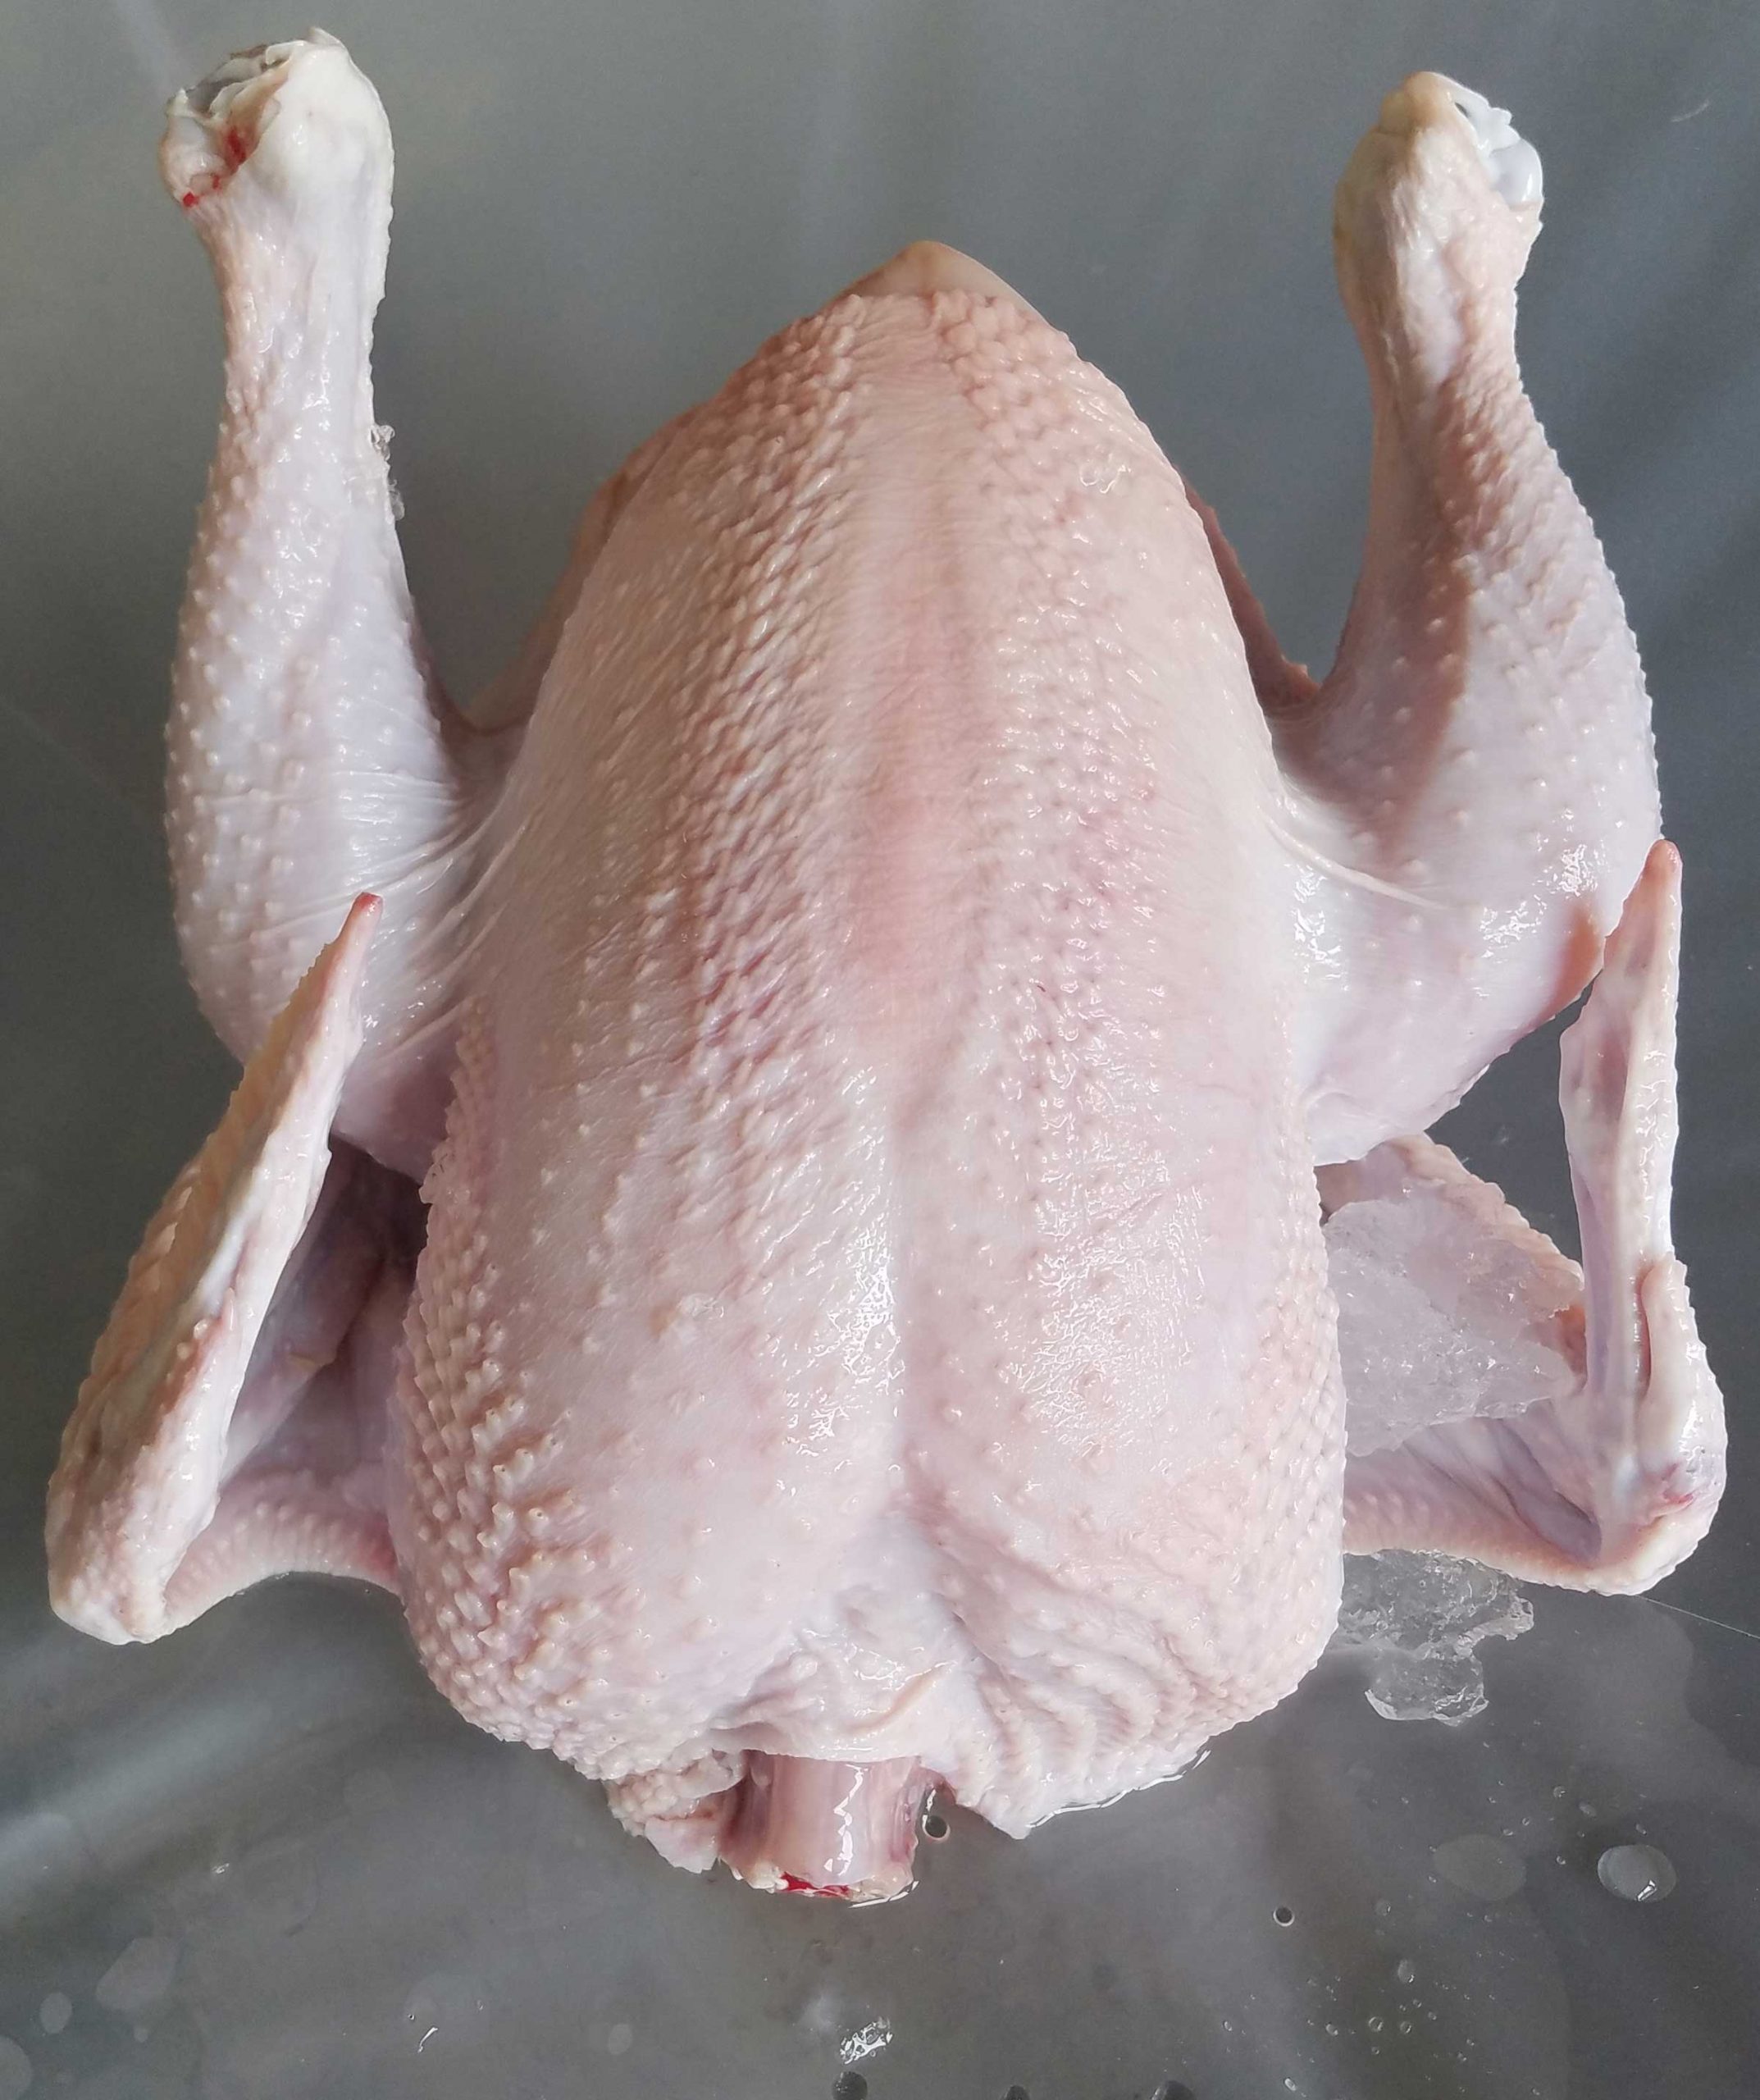 frozen plucked Broiler Hen